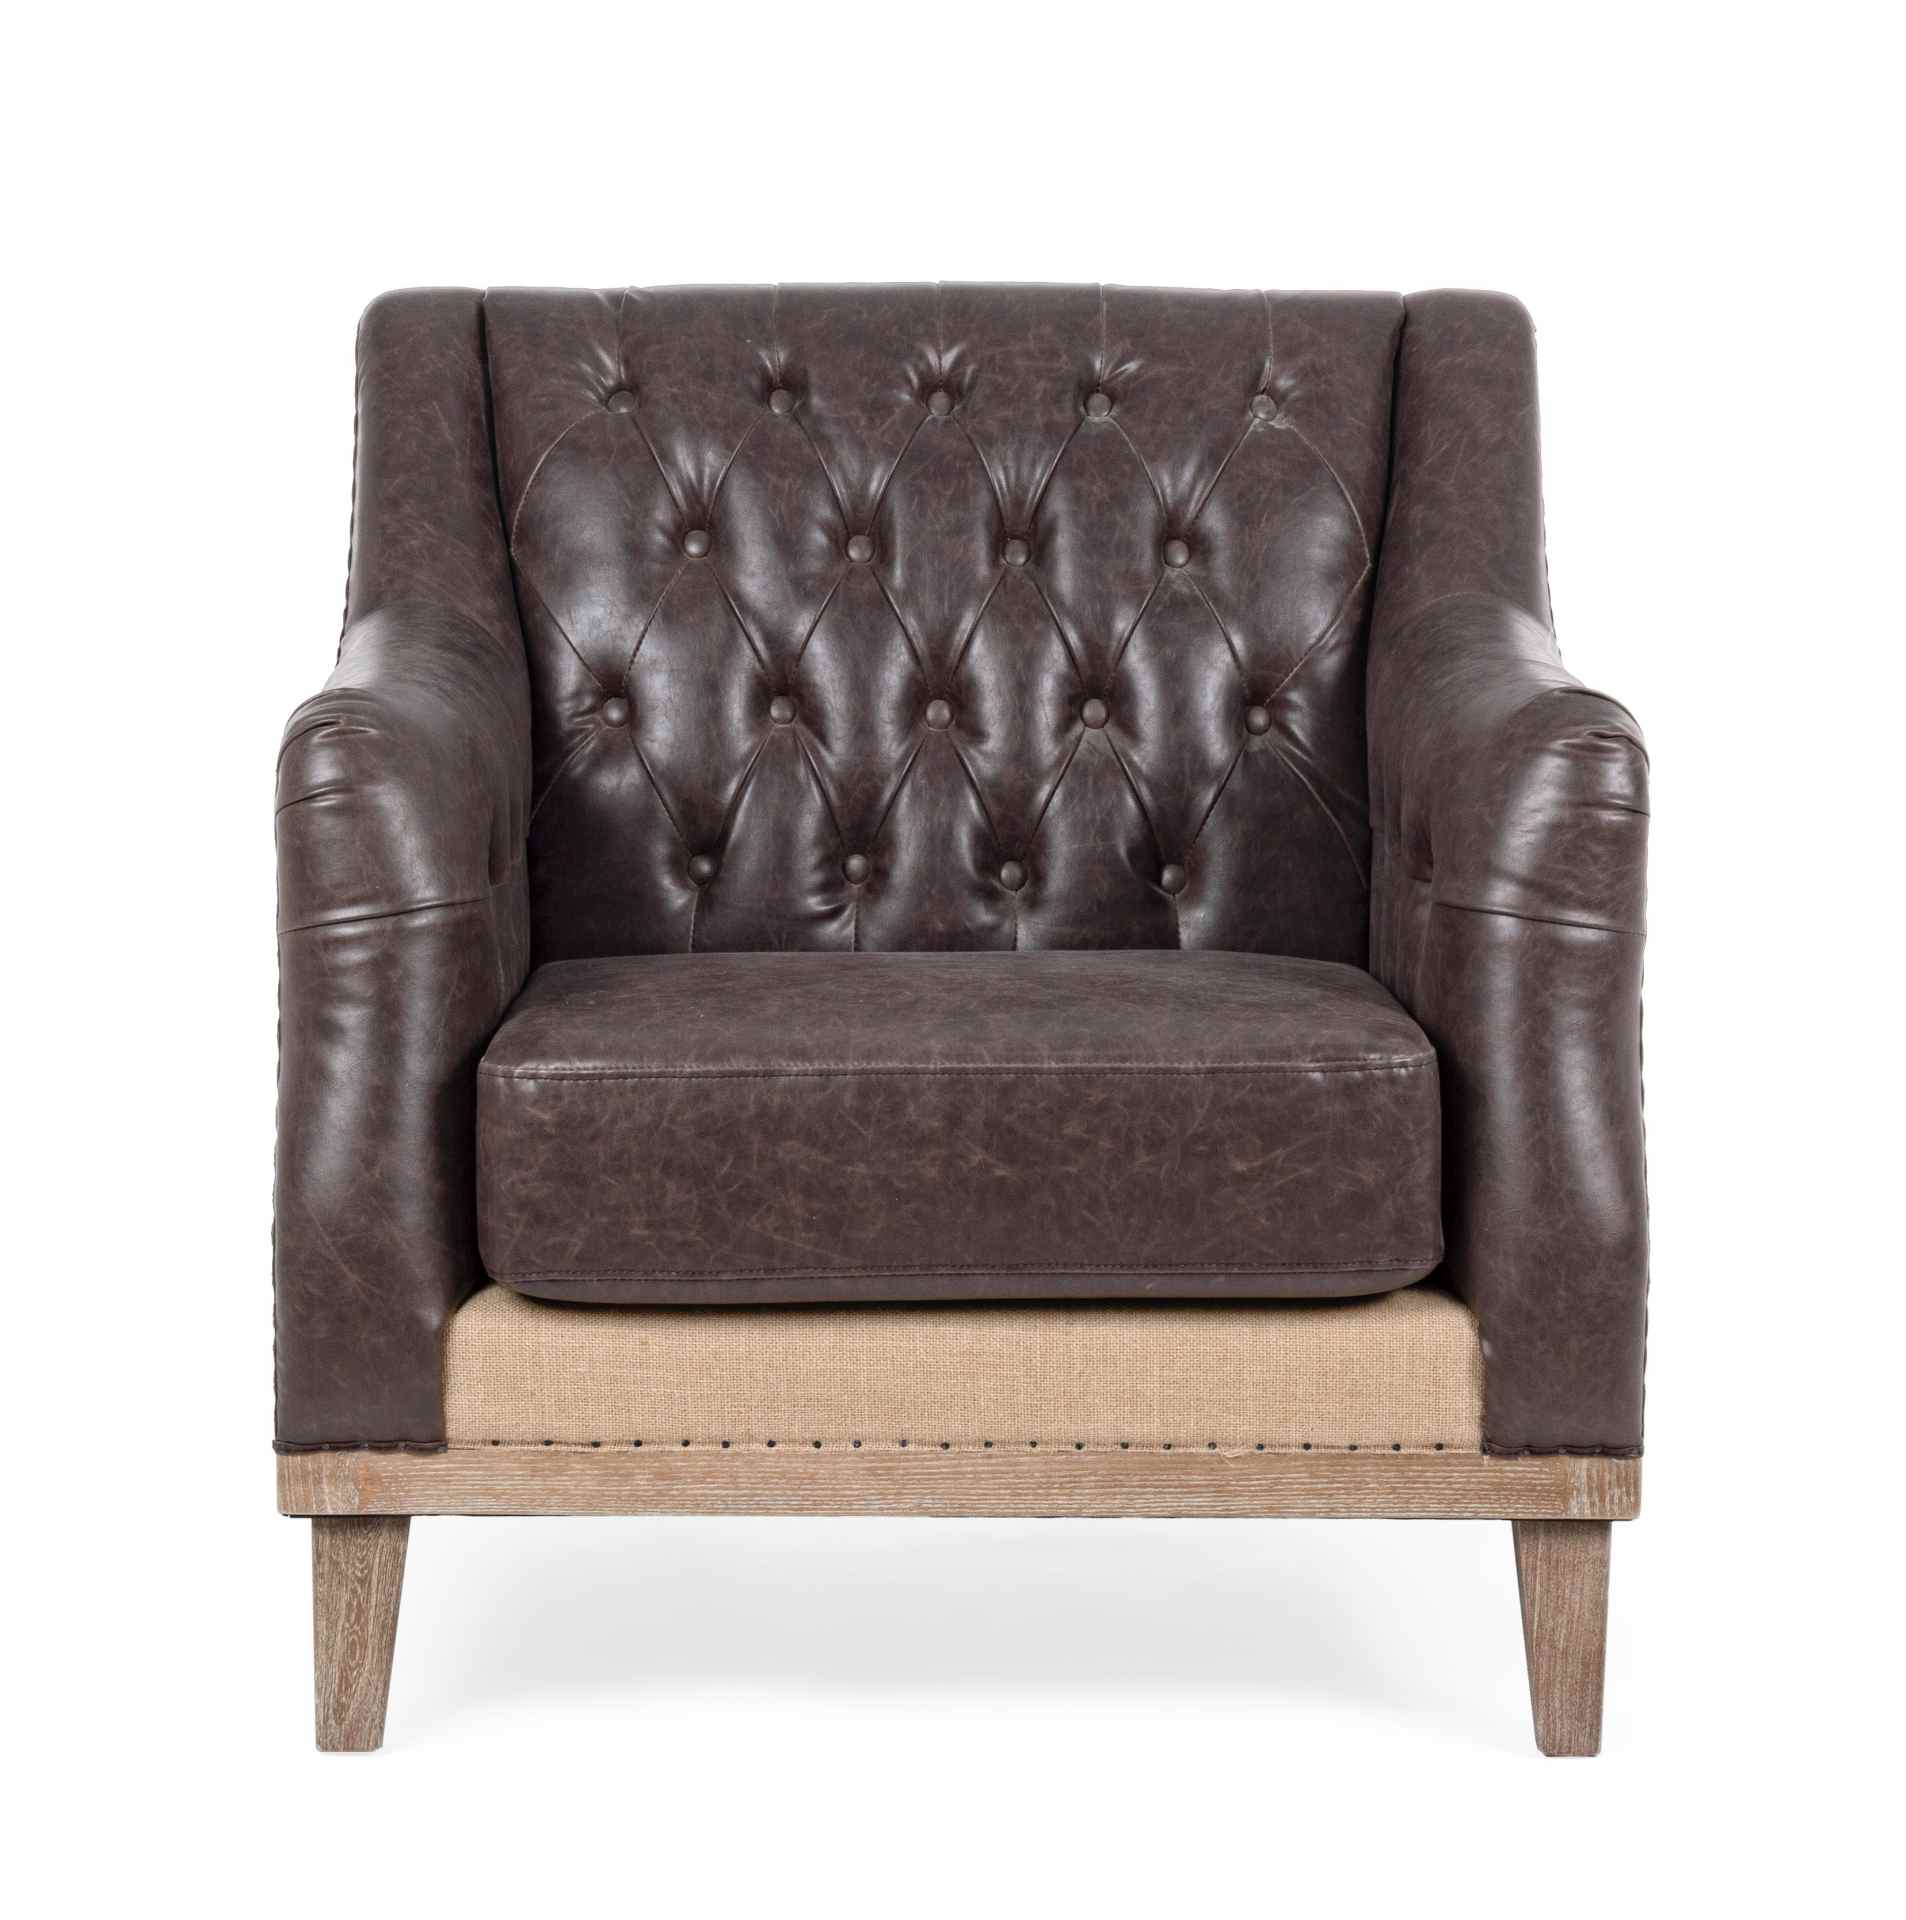 Der Sessel Raymond überzeugt mit seinem klassischen Design. Gefertigt wurde er aus Kunstleder, welches einen braunen Farbton besitzt. Das Gestell ist aus Eschenholz und hat eine natürliche Farbe. Der Sessel besitzt eine Sitzhöhe von 49 cm. Die Breite betr